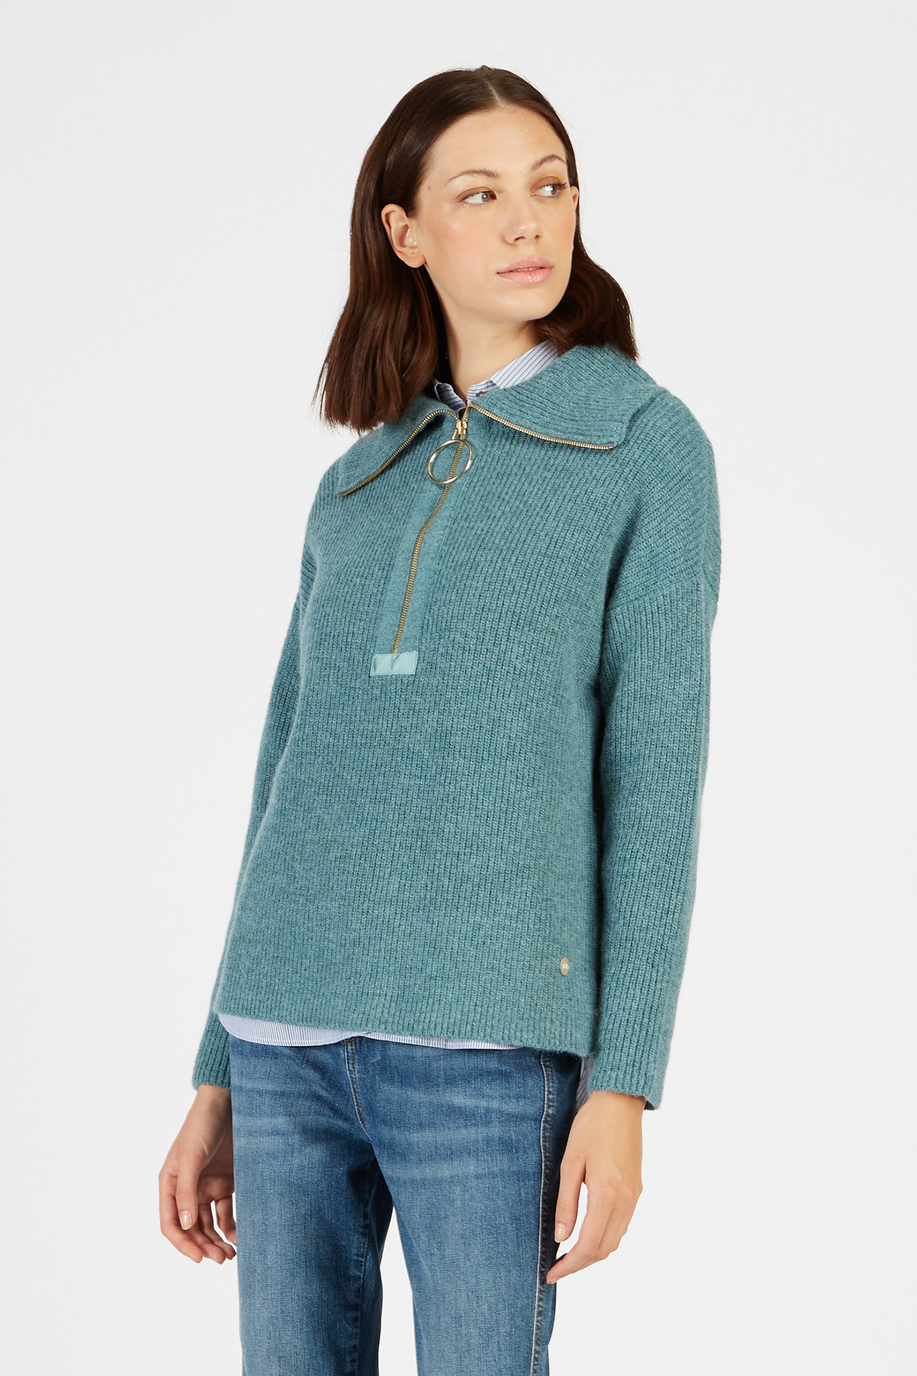 Maglia tricot donna collo alto in alpaca regular fit con zip | La Martina - Official Online Shop